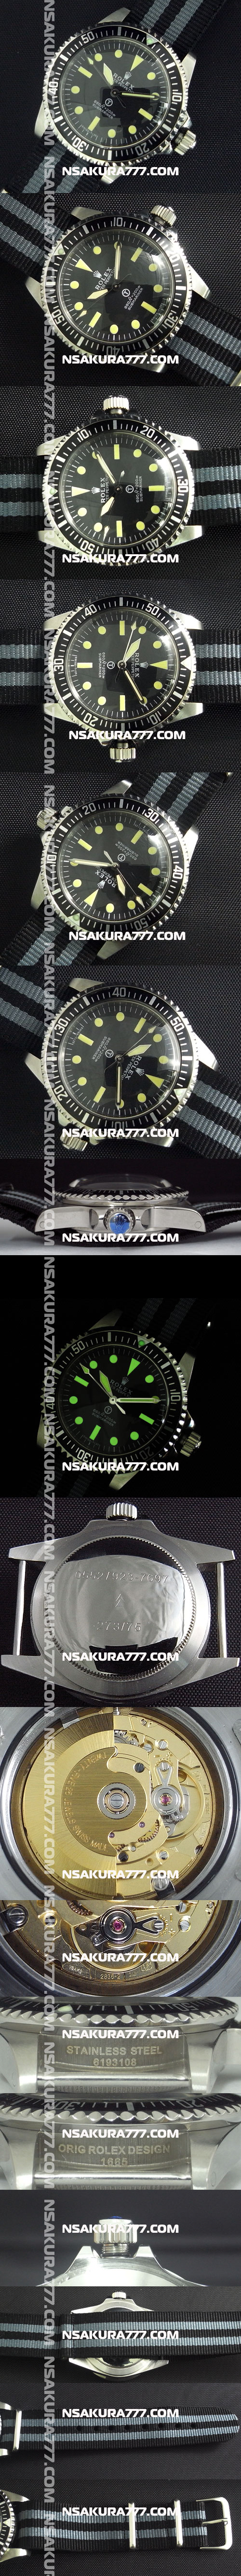 レプリカ時計ロレックス サブマリーナ ミリタリー Swiss ETA社 2836-2 - ウインドウを閉じる